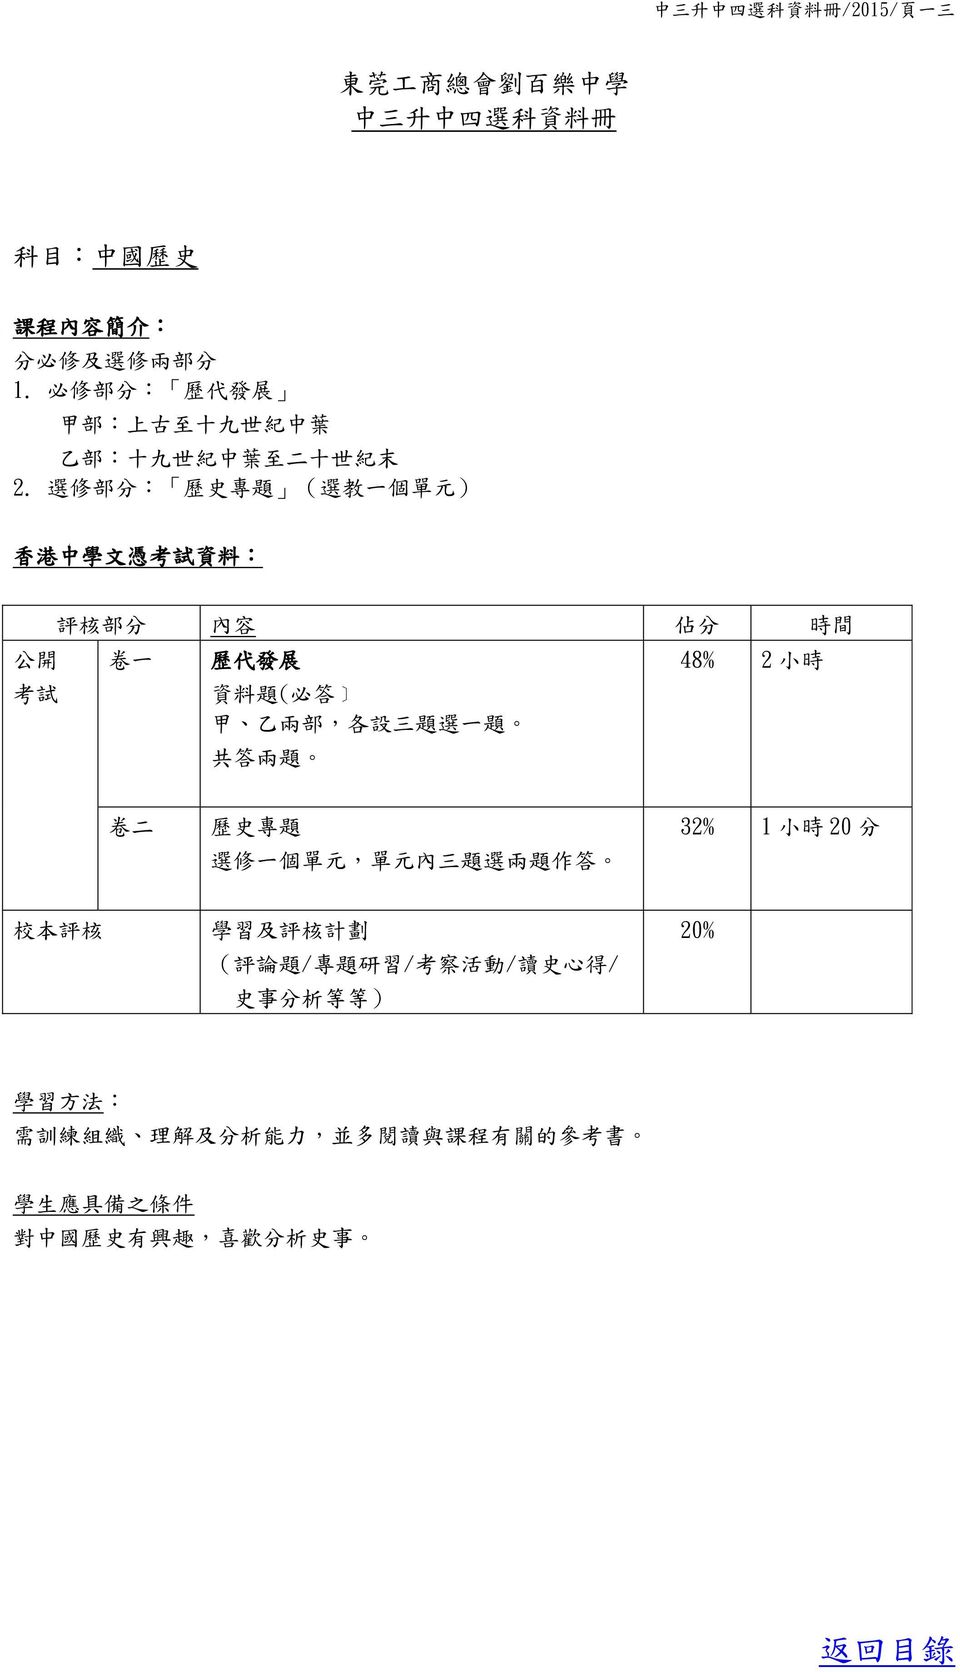 選 修 部 分 : 歷 史 專 題 ( 選 教 一 個 單 元 ) 香 港 中 學 文 憑 考 試 資 料 : 公 開 考 試 評 核 部 分 內 容 佔 分 時 間 卷 一 歷 代 發 展 資 料 題 ( 必 答 甲 乙 兩 部, 各 設 三 題 選 一 題